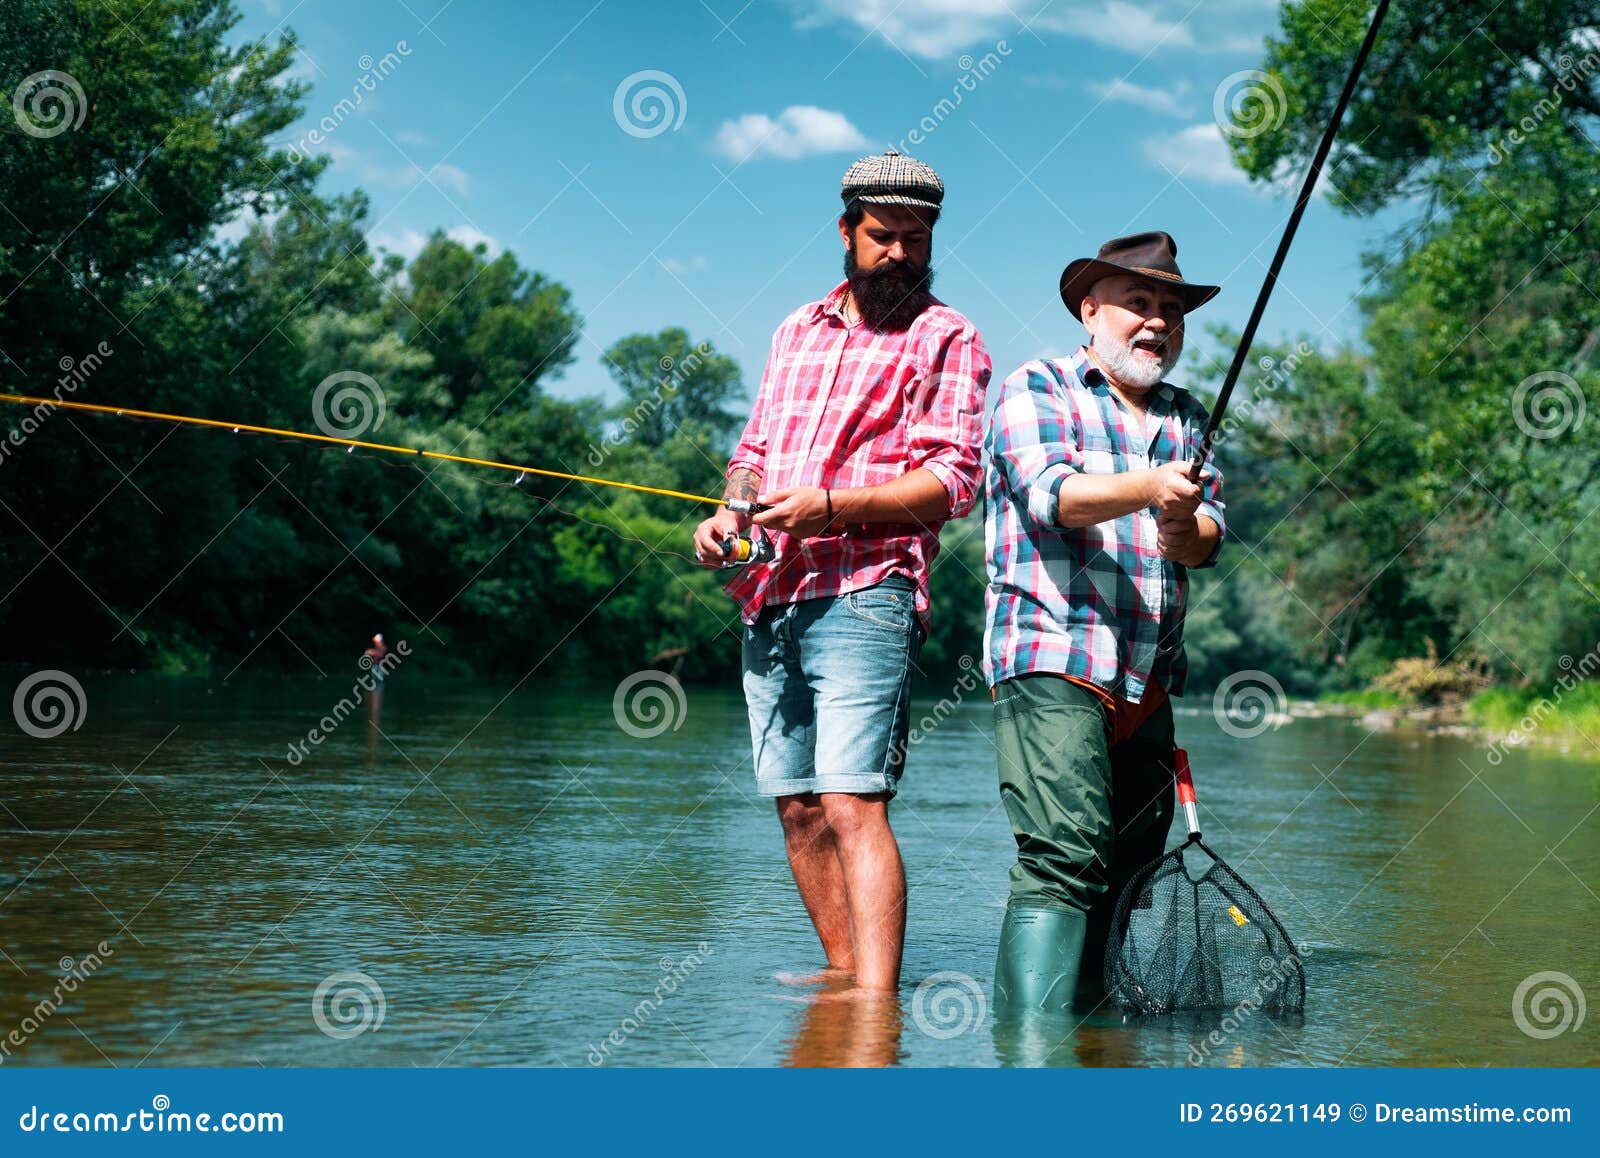 Bearded Elegant Men. Fisher Fishing Equipment. Fishing is Fun. Man